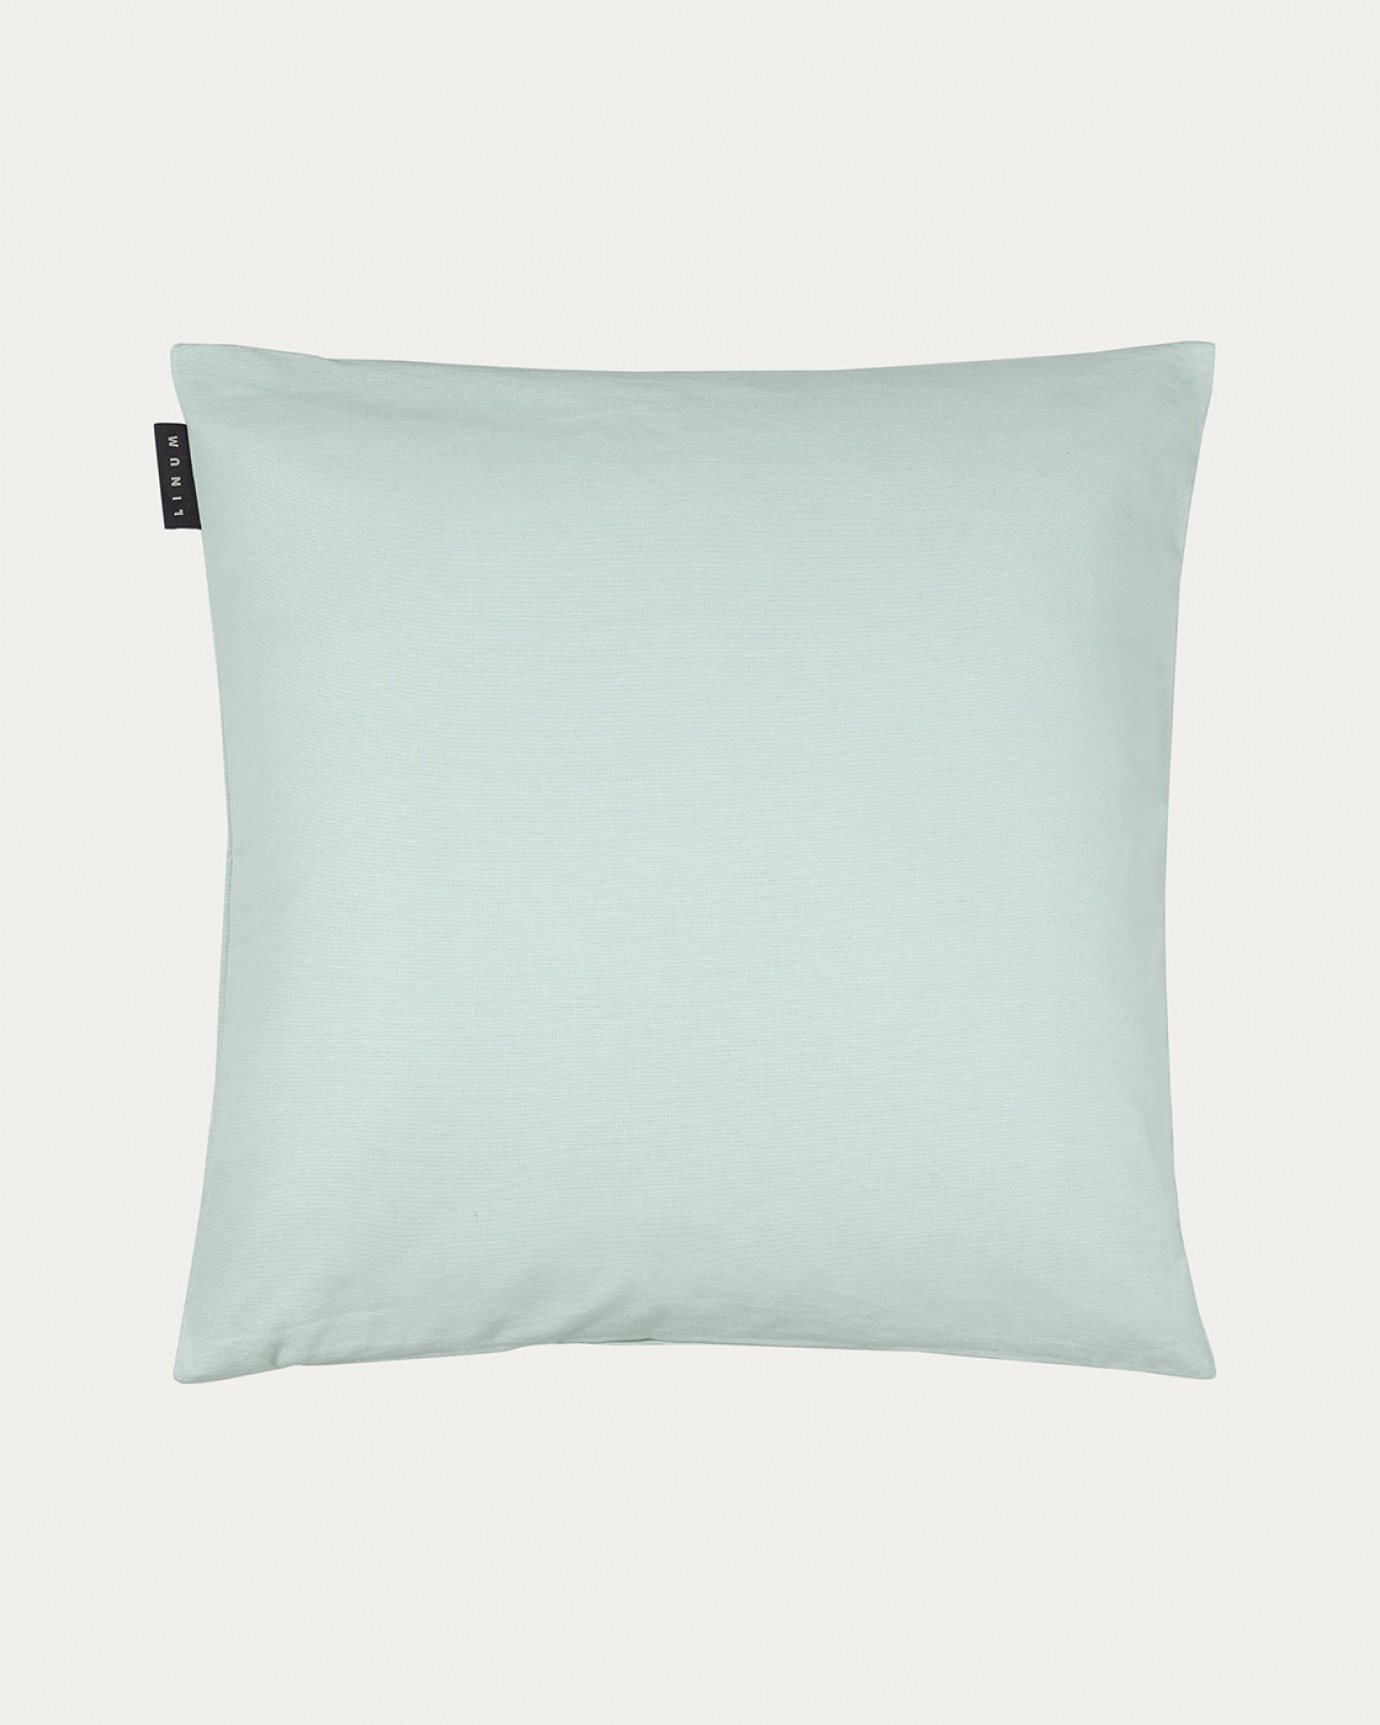 Image du produit housse de coussin ANNABELL vert clair glacé en coton doux de LINUM DESIGN. Taille 50 x 50 cm.